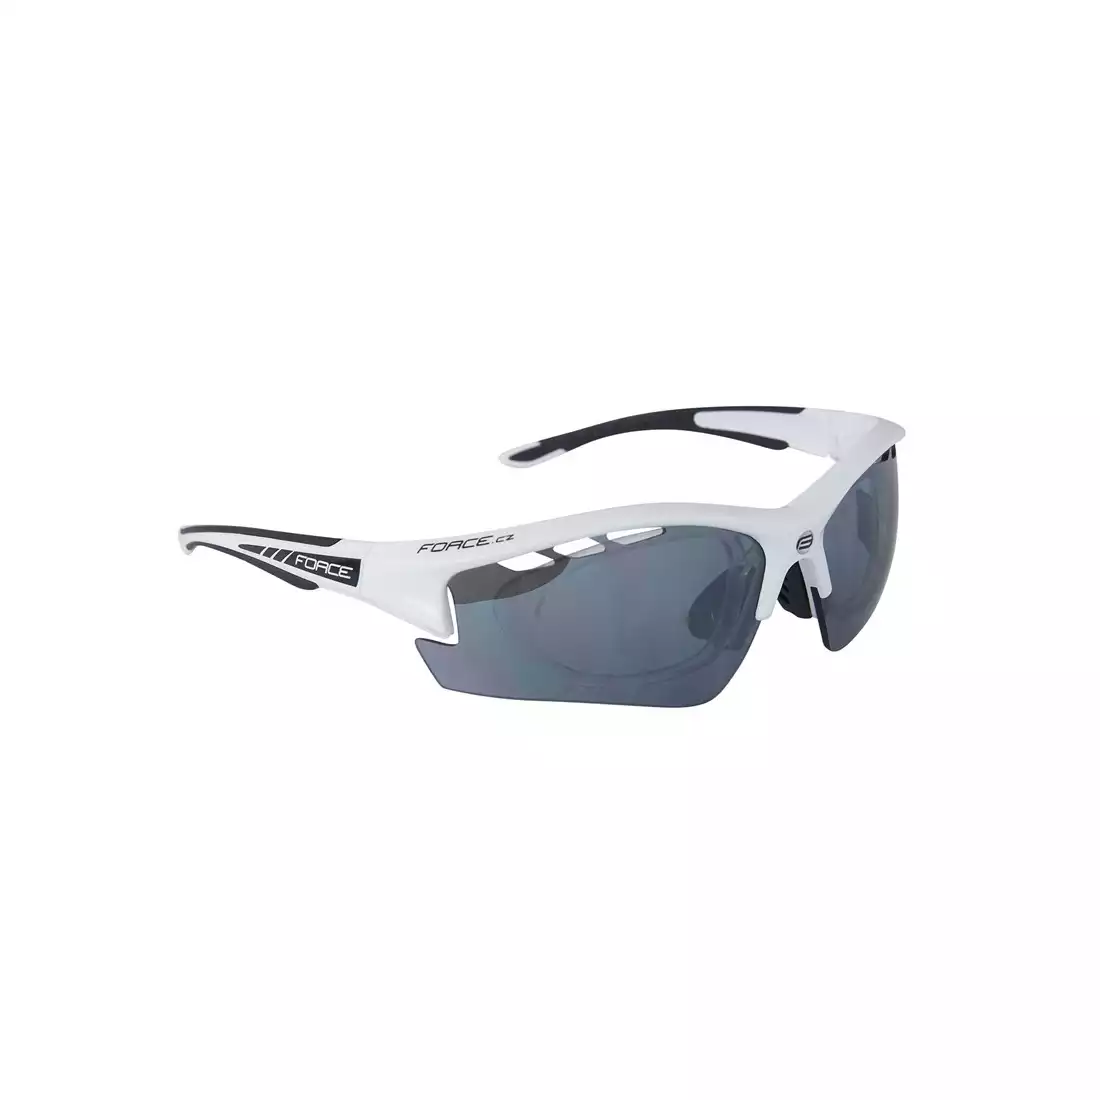 909222 FORCE RIDE PRO okulary z wymiennymi szkłami + korekcja biało-czarne